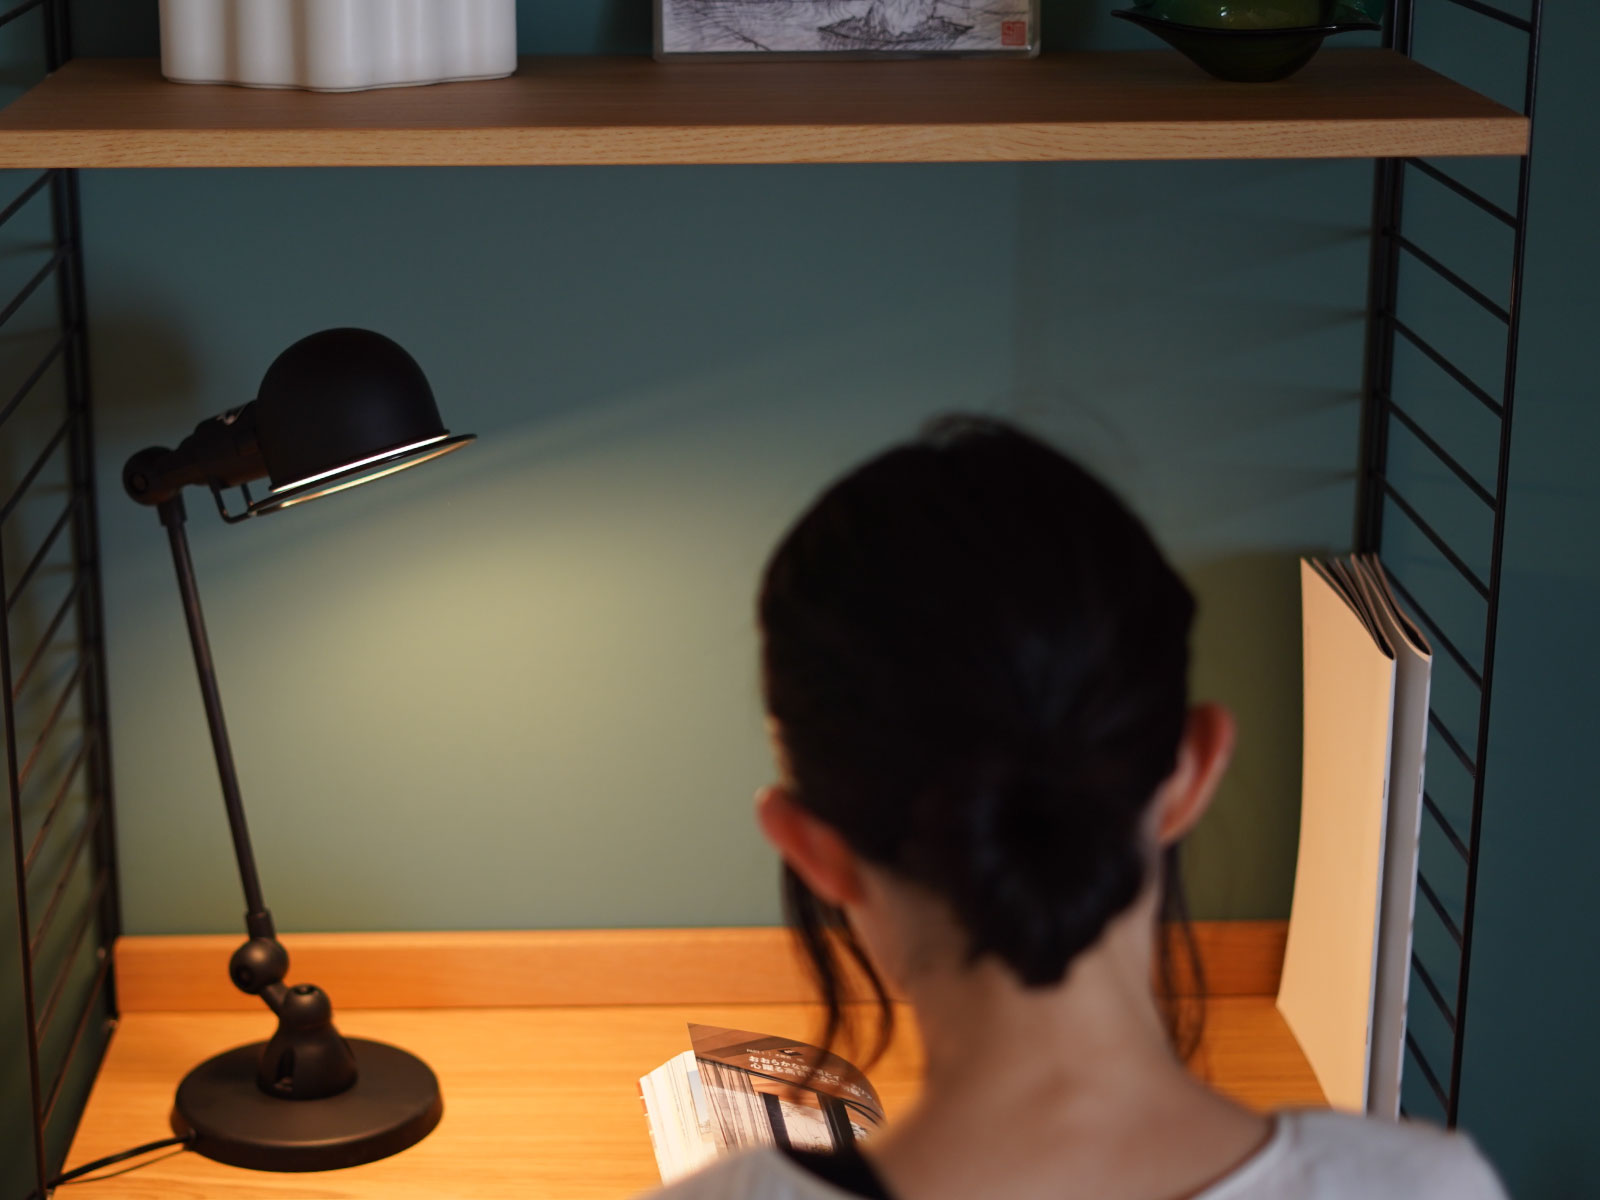 JIELDE/ジェルデ 303 Signal Desk Lamp デスクライト マットブラック